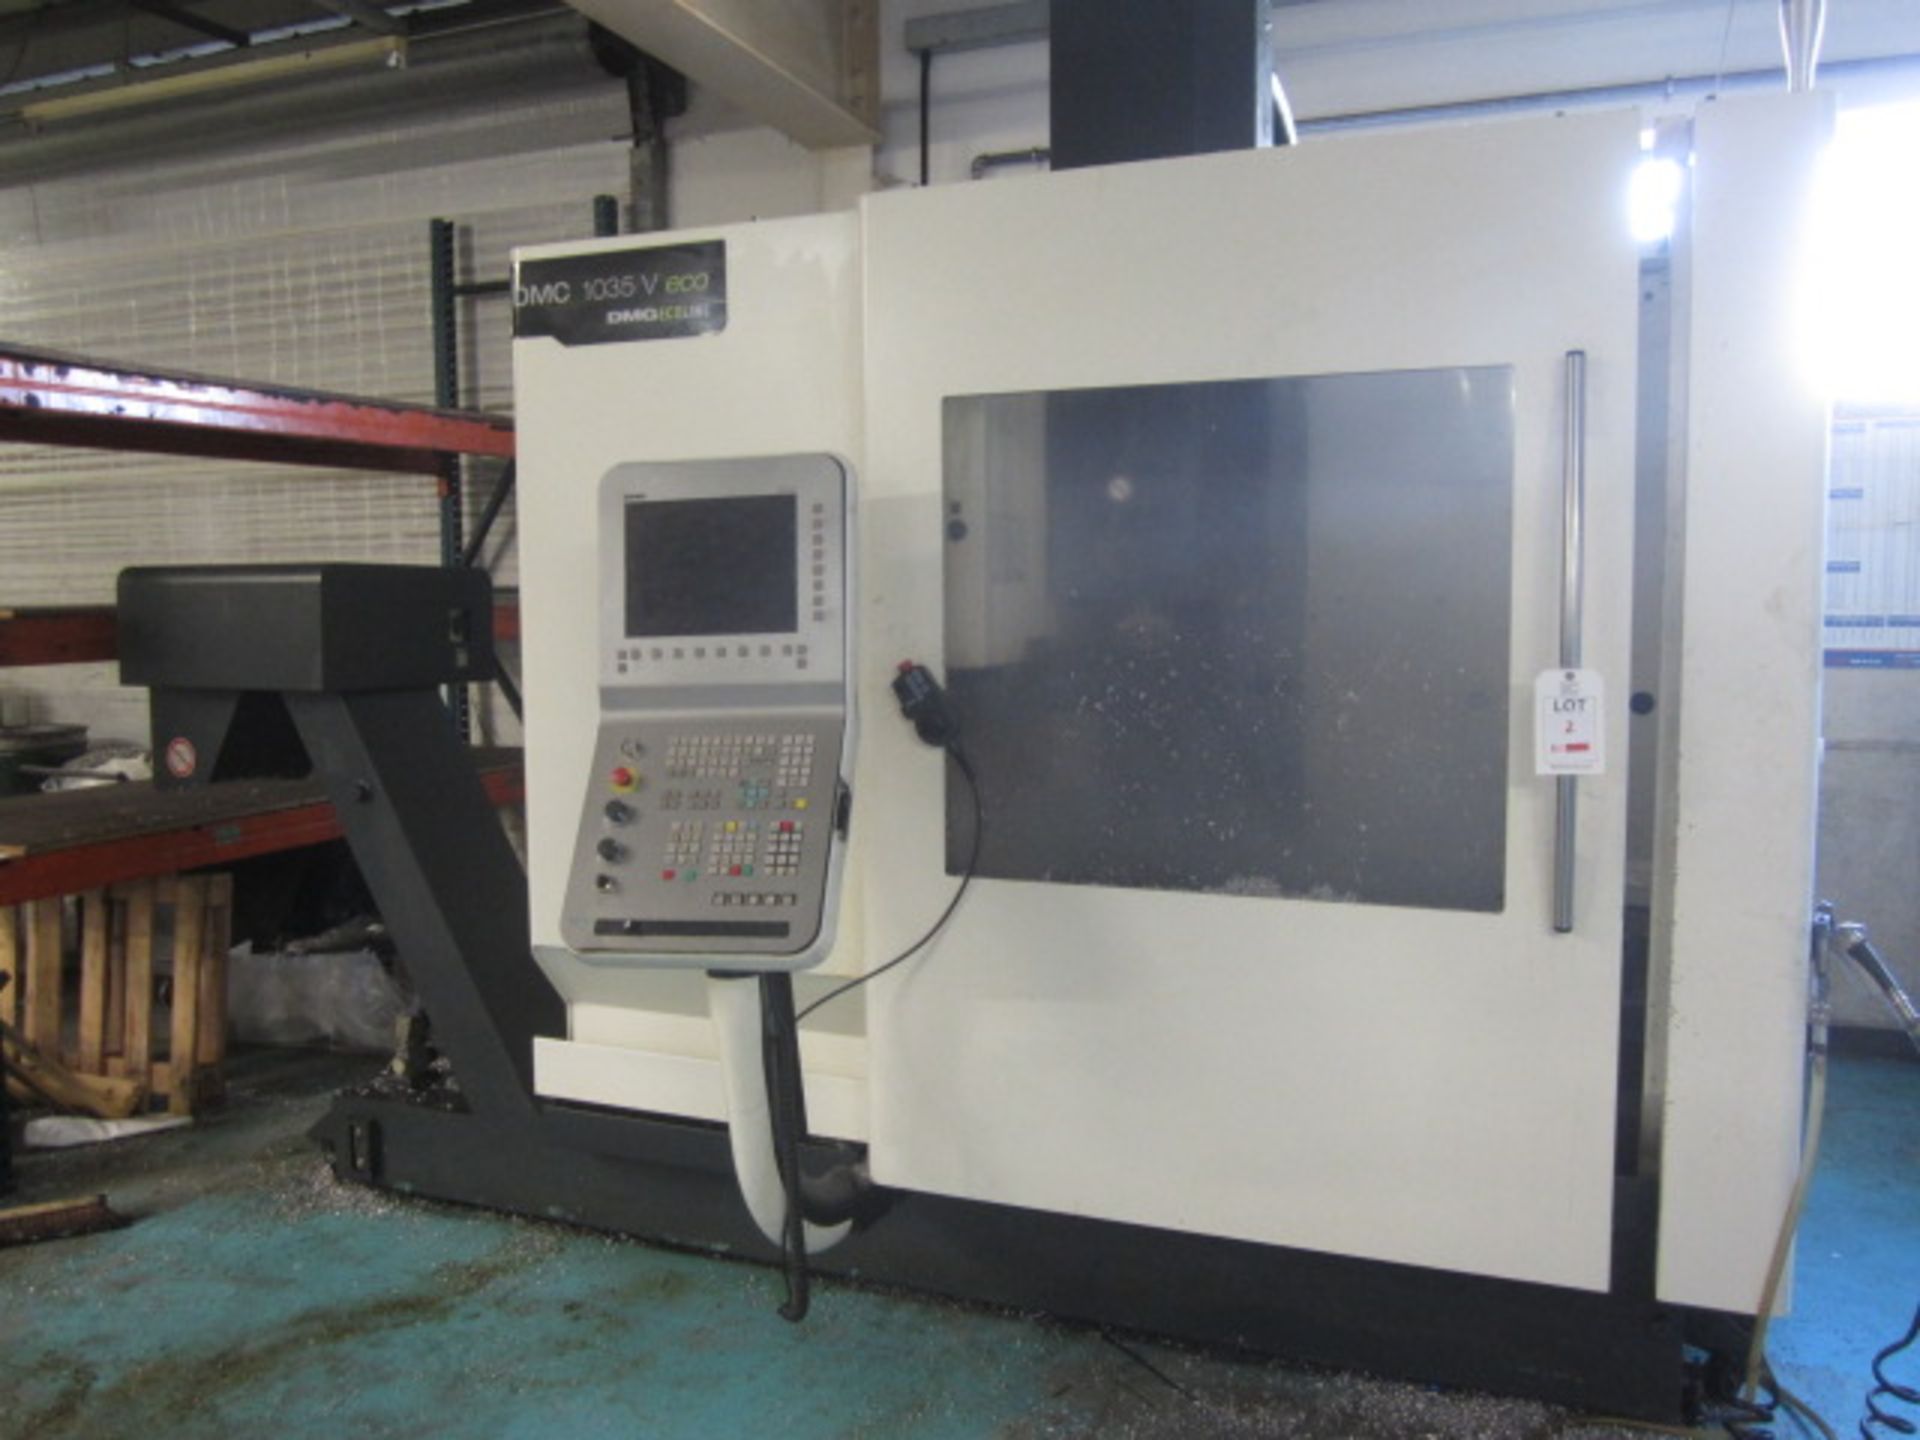 DMG Gildemeister DMC 1035 V Eco CNC vertical machining centre, serial no: 15390004/BE (2011),